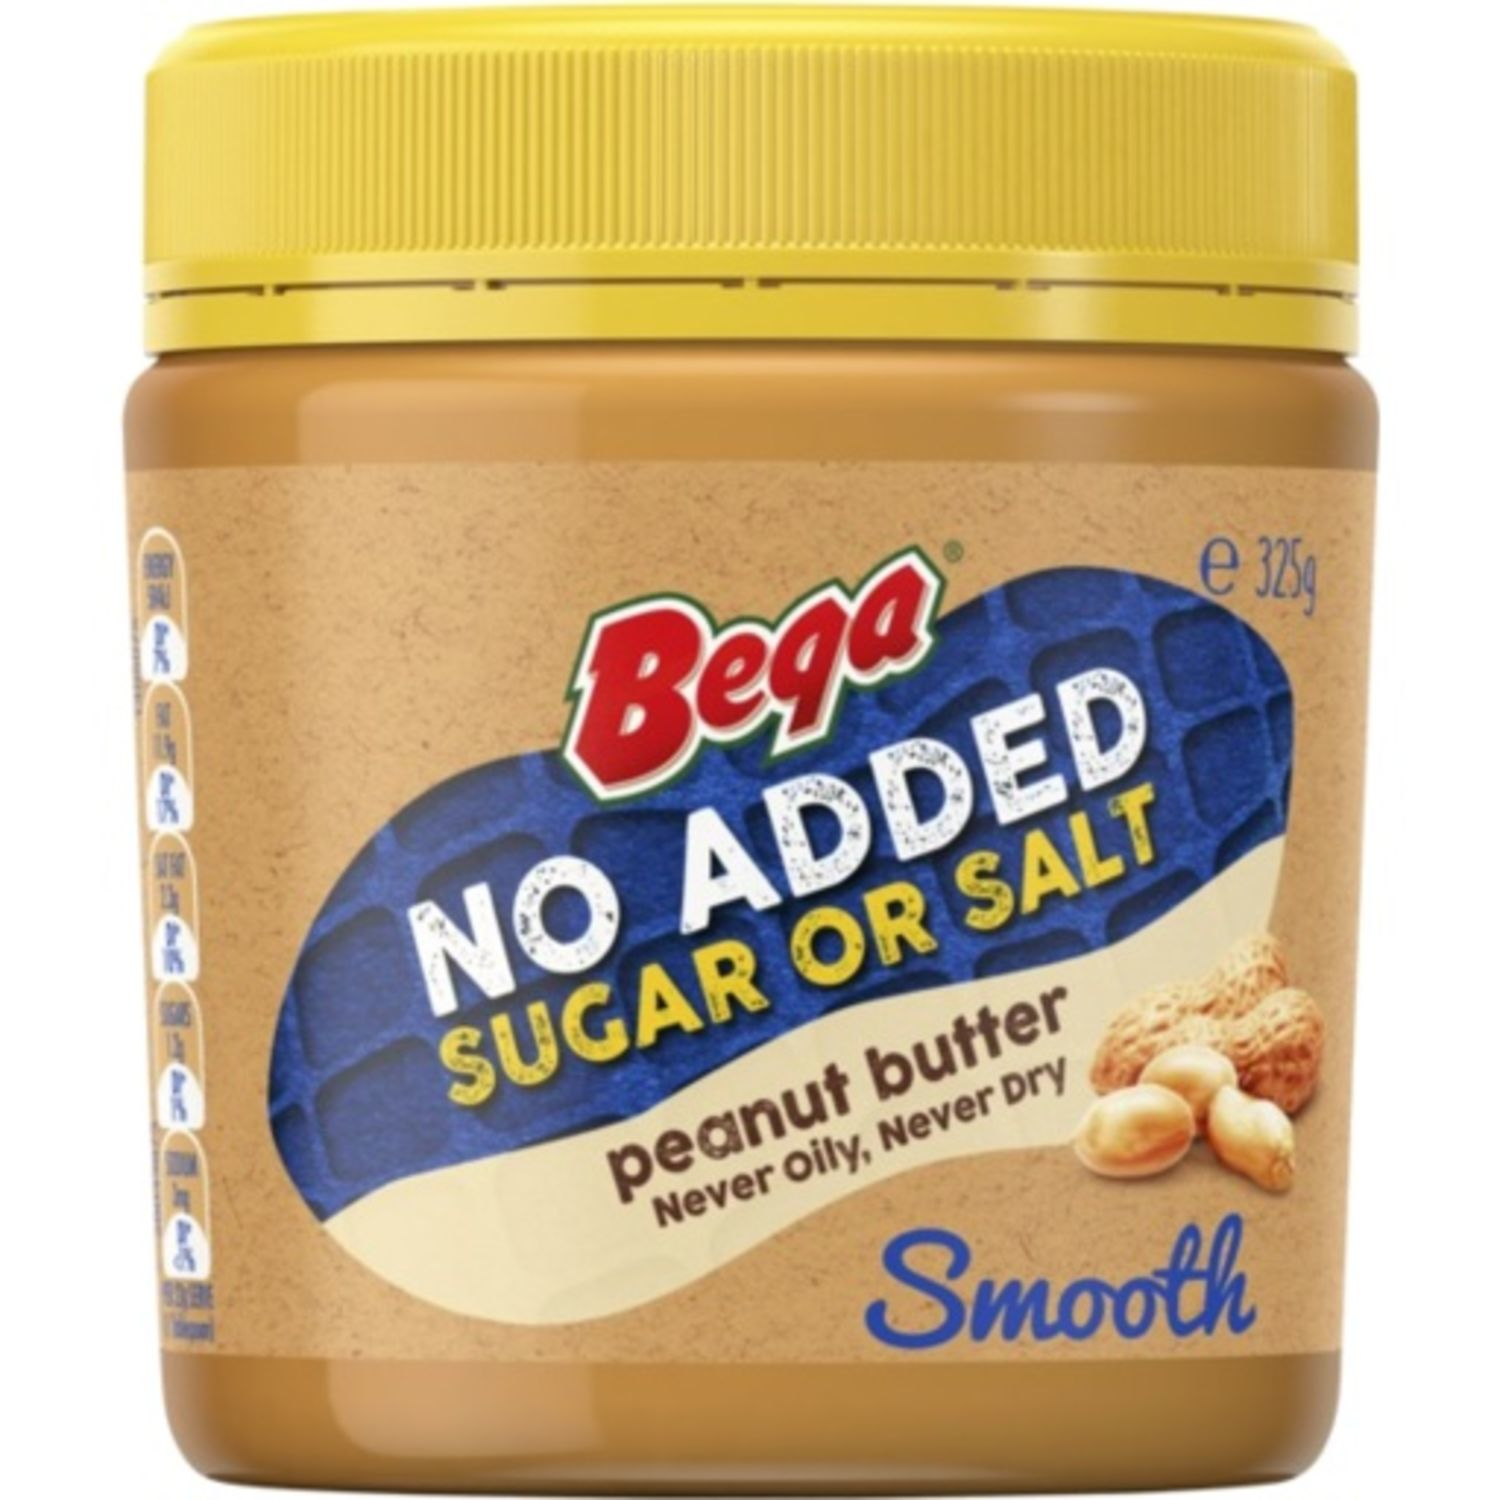 Bega Peanut Butter Smooth No Added Sugar Or Salt, 325 Gram